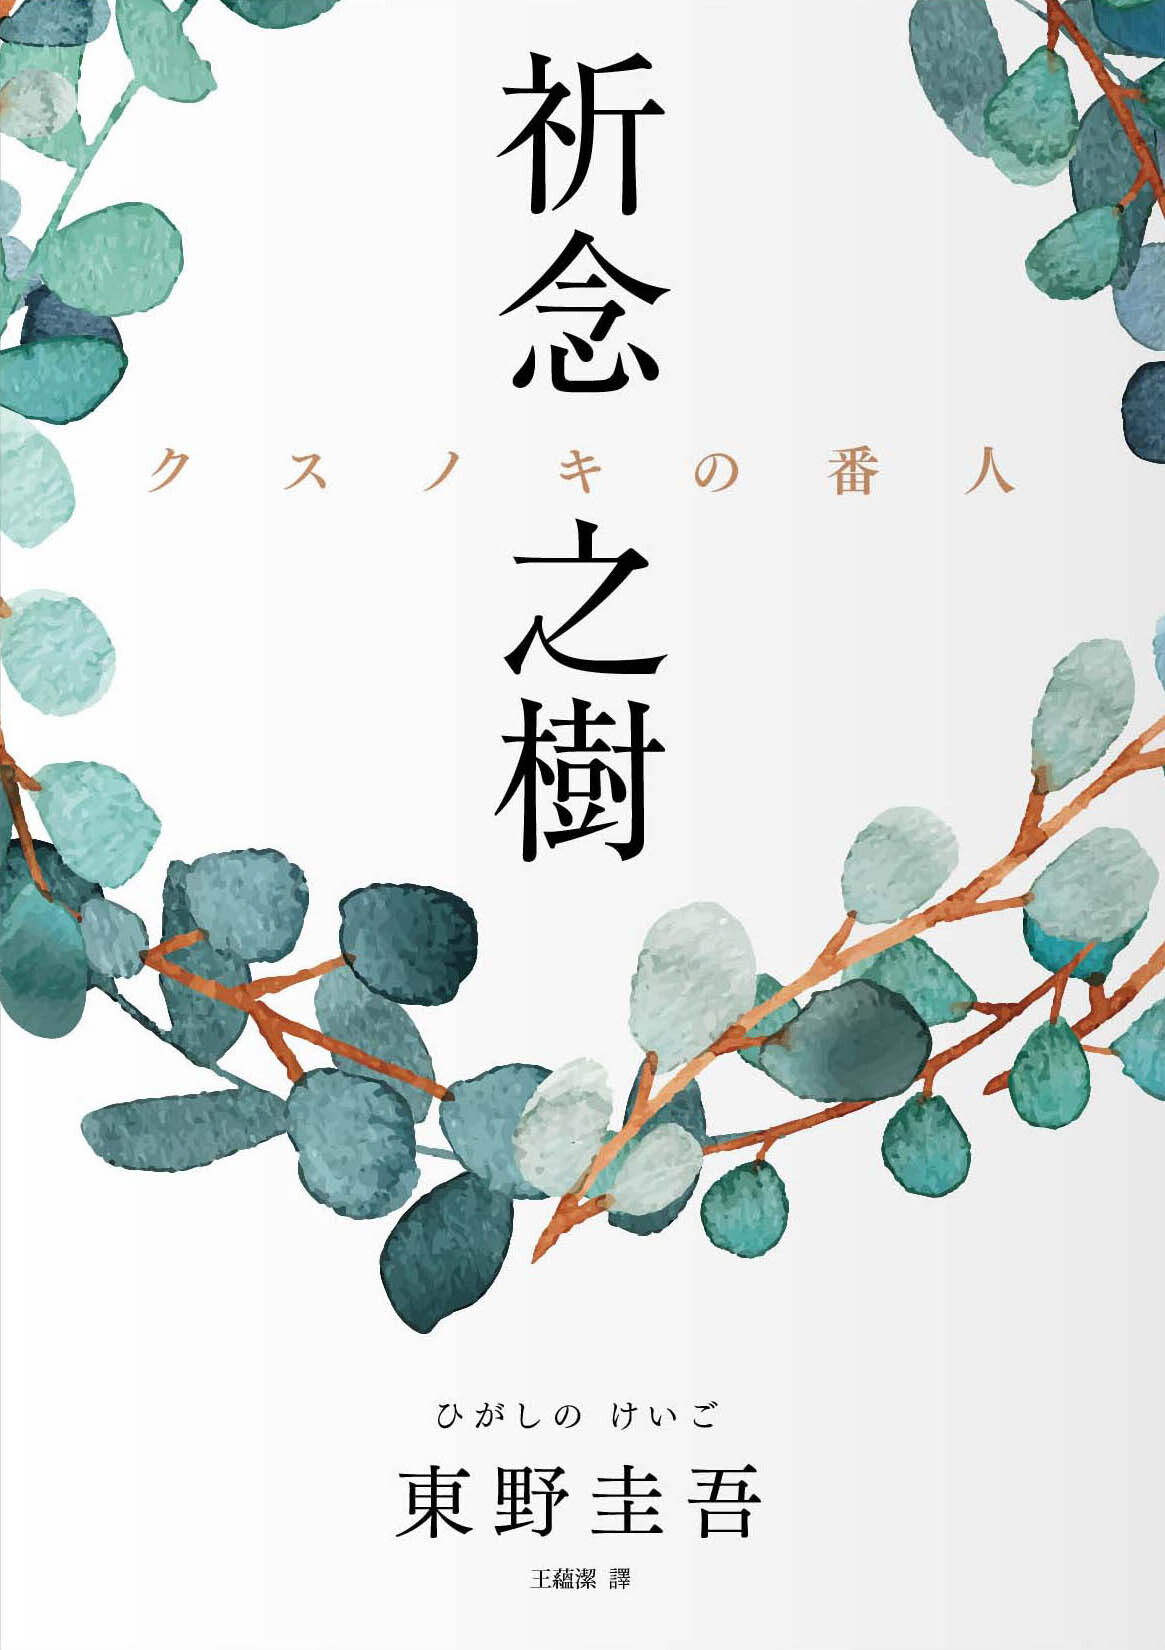 祝！作家生活35周年 東野圭吾の新刊『クスノキの番人』を2020年3月17日